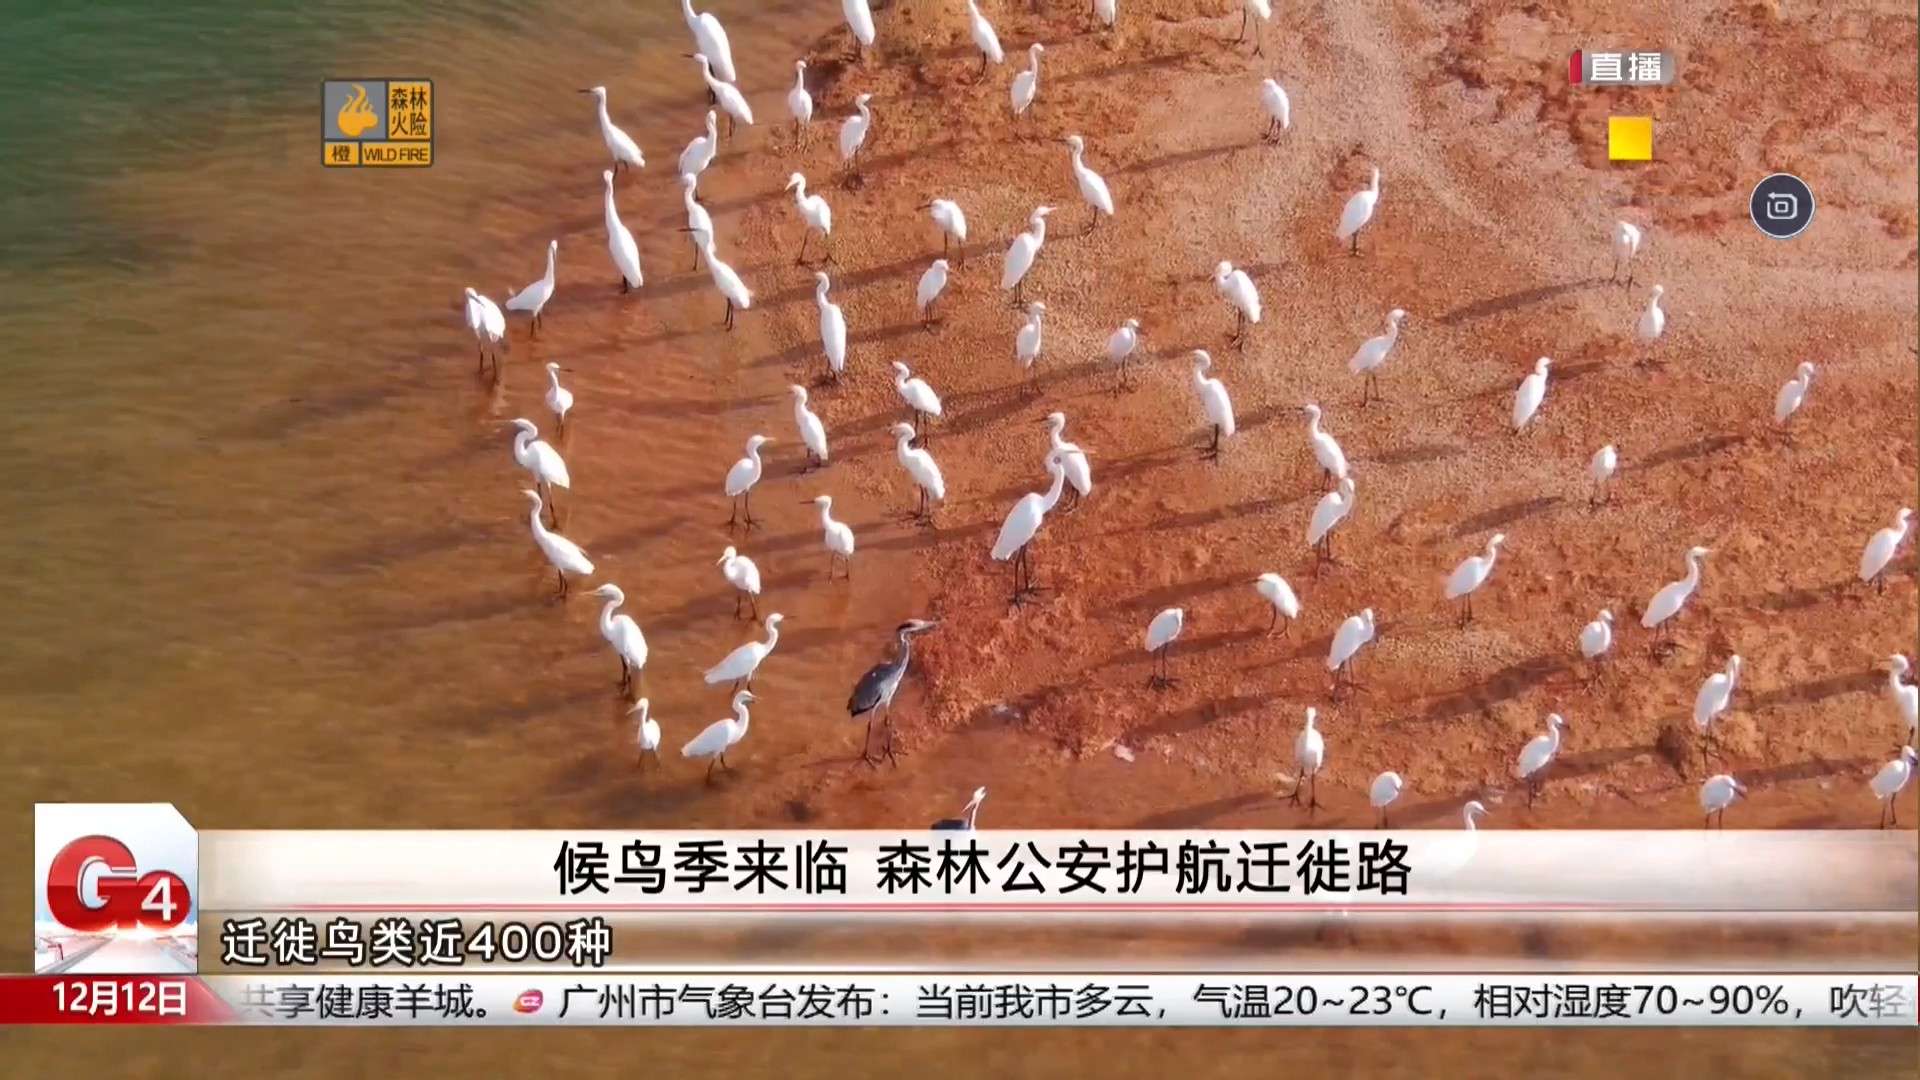 广州台新闻频道 G4出动 候鸟季来临 森林公安护航迁徙路